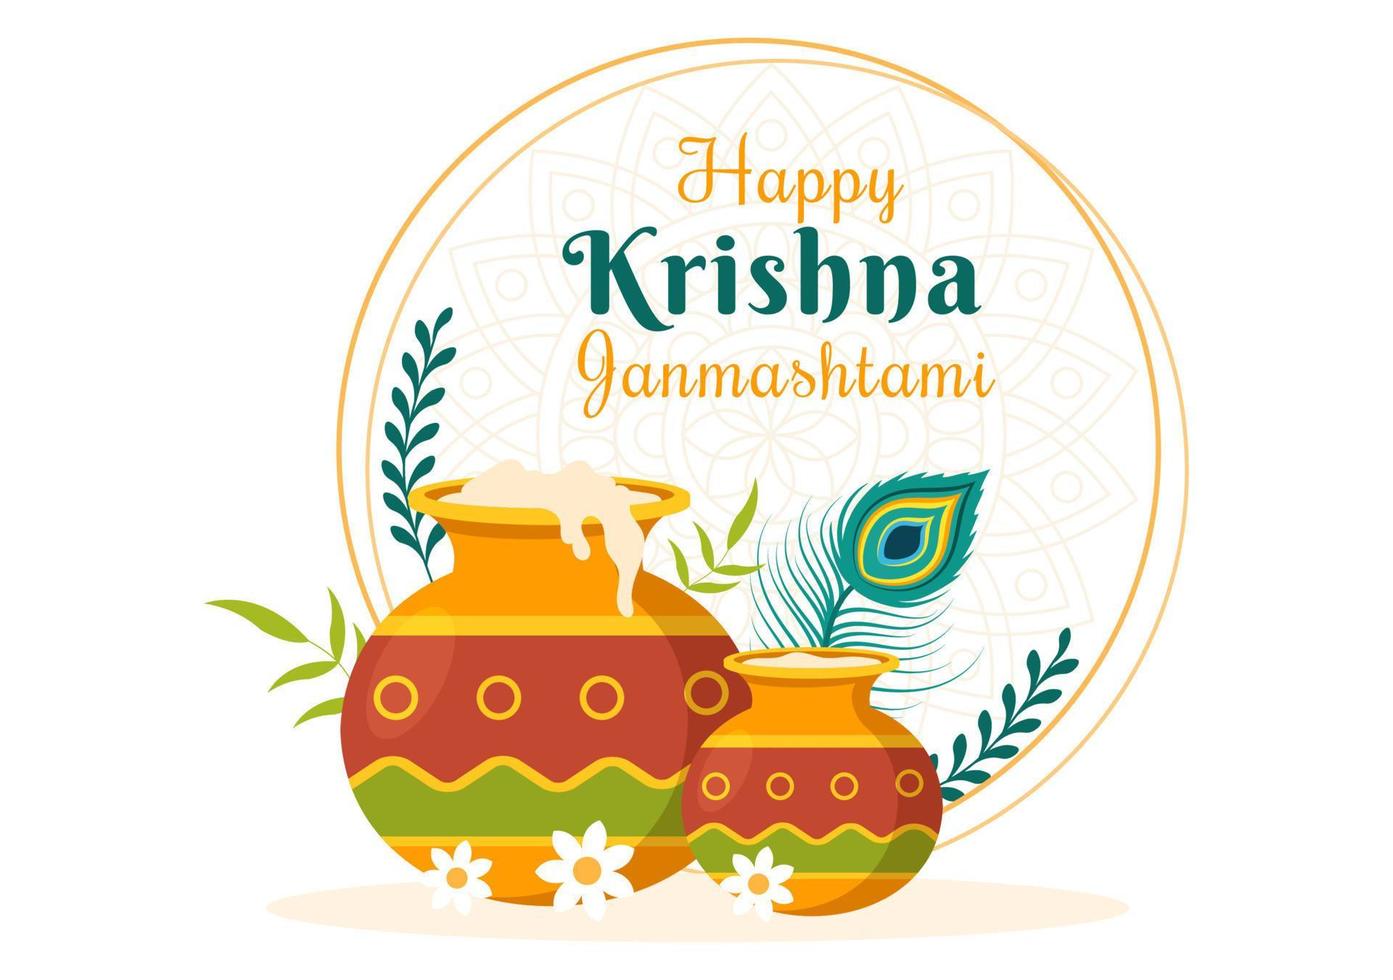 feliz festival krishna janmashtami de la india con bansuri y flauta, dahi handi y pluma de pavo real en una linda ilustración de fondo de caricatura plana vector